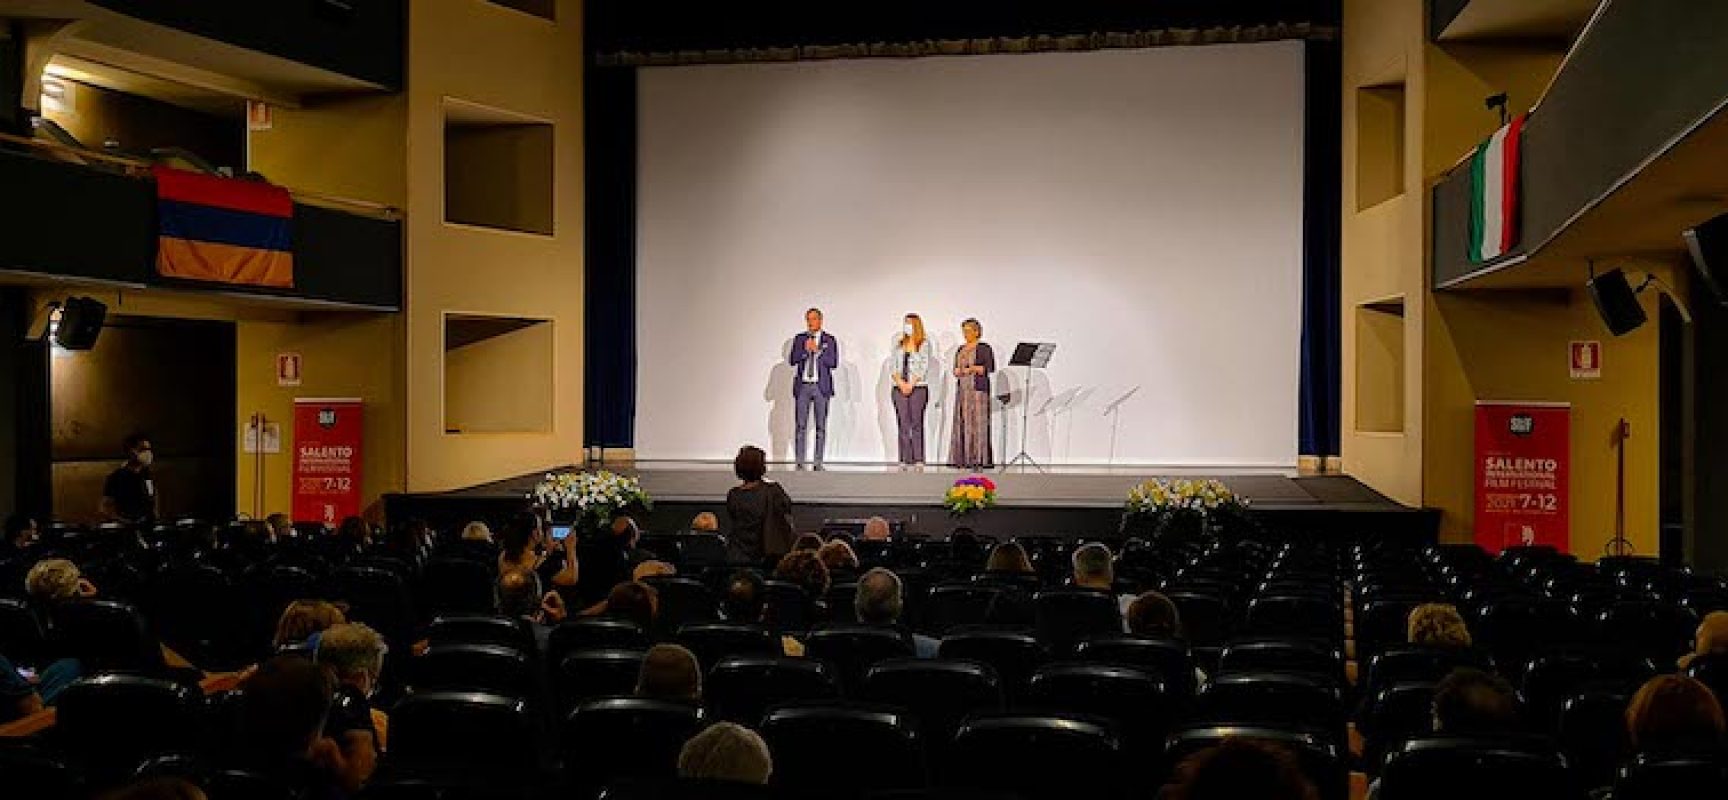 Salento International Film Festival, ad ottobre la cerimonia di premiazione